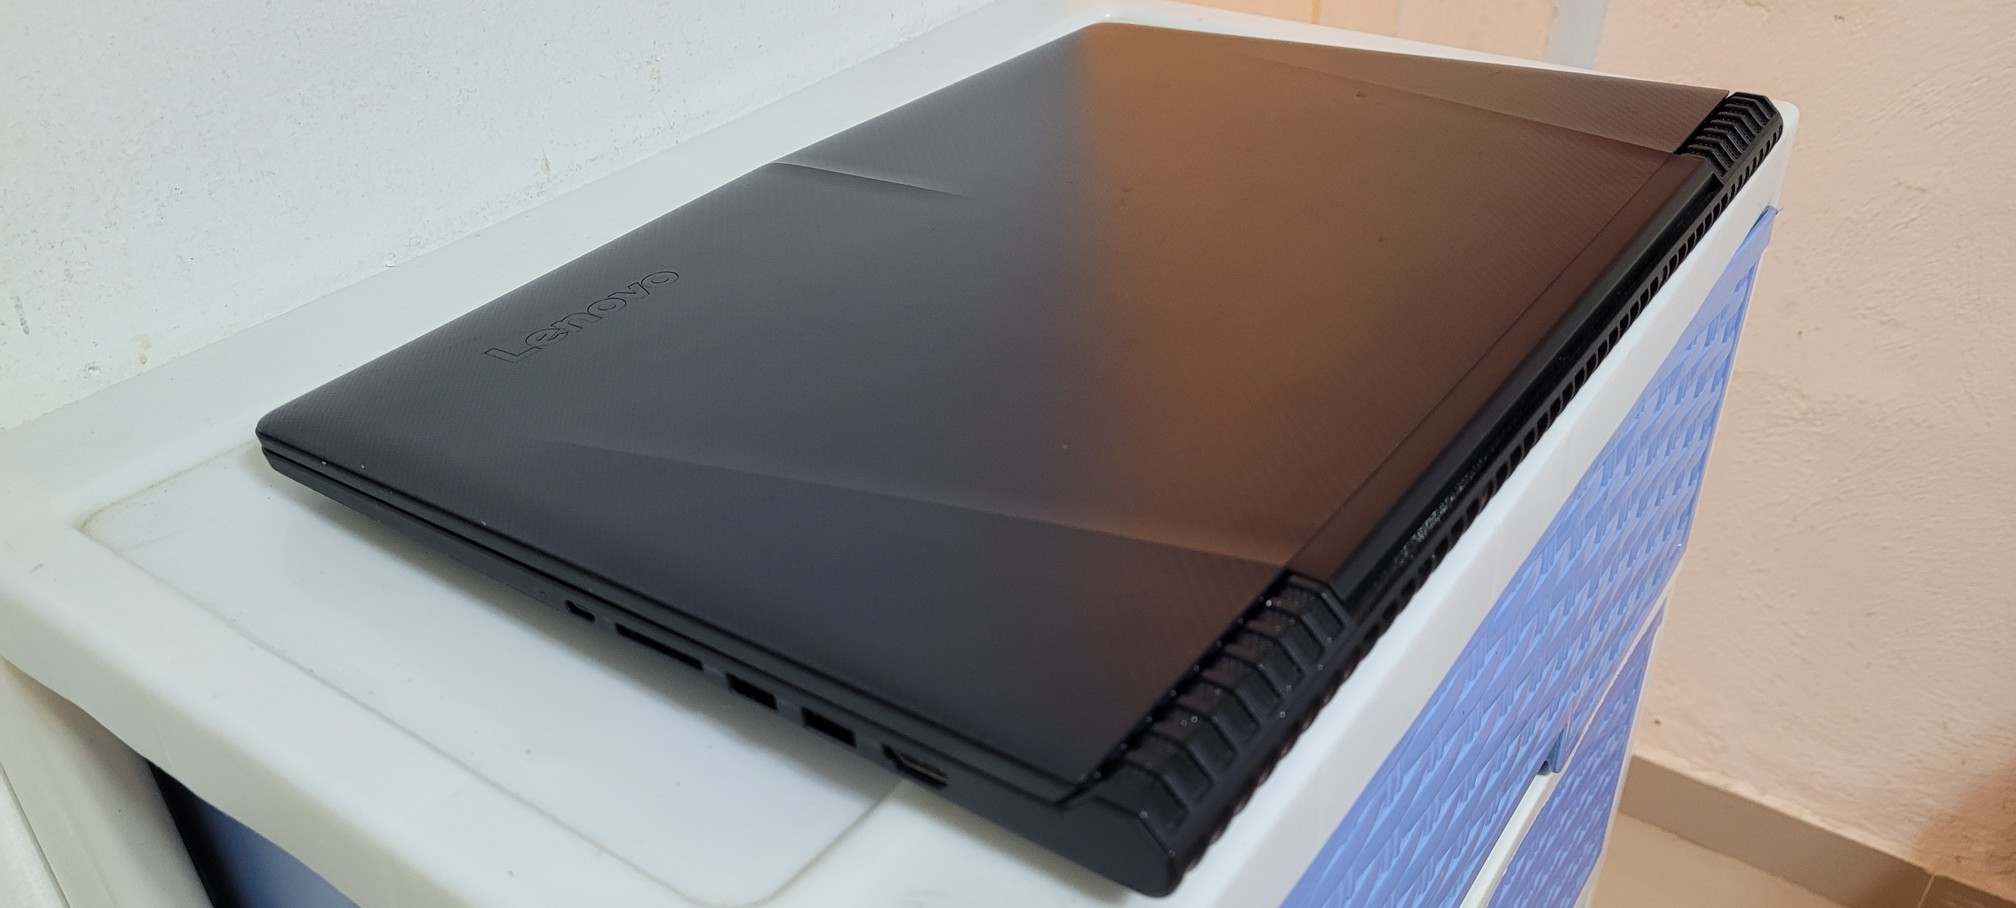 computadoras y laptops - Lenovo Gamer 17 Pulg Core i7 Ram 16gb Disco 1tb Nvidea Gtx 1050Ti 4gb 2